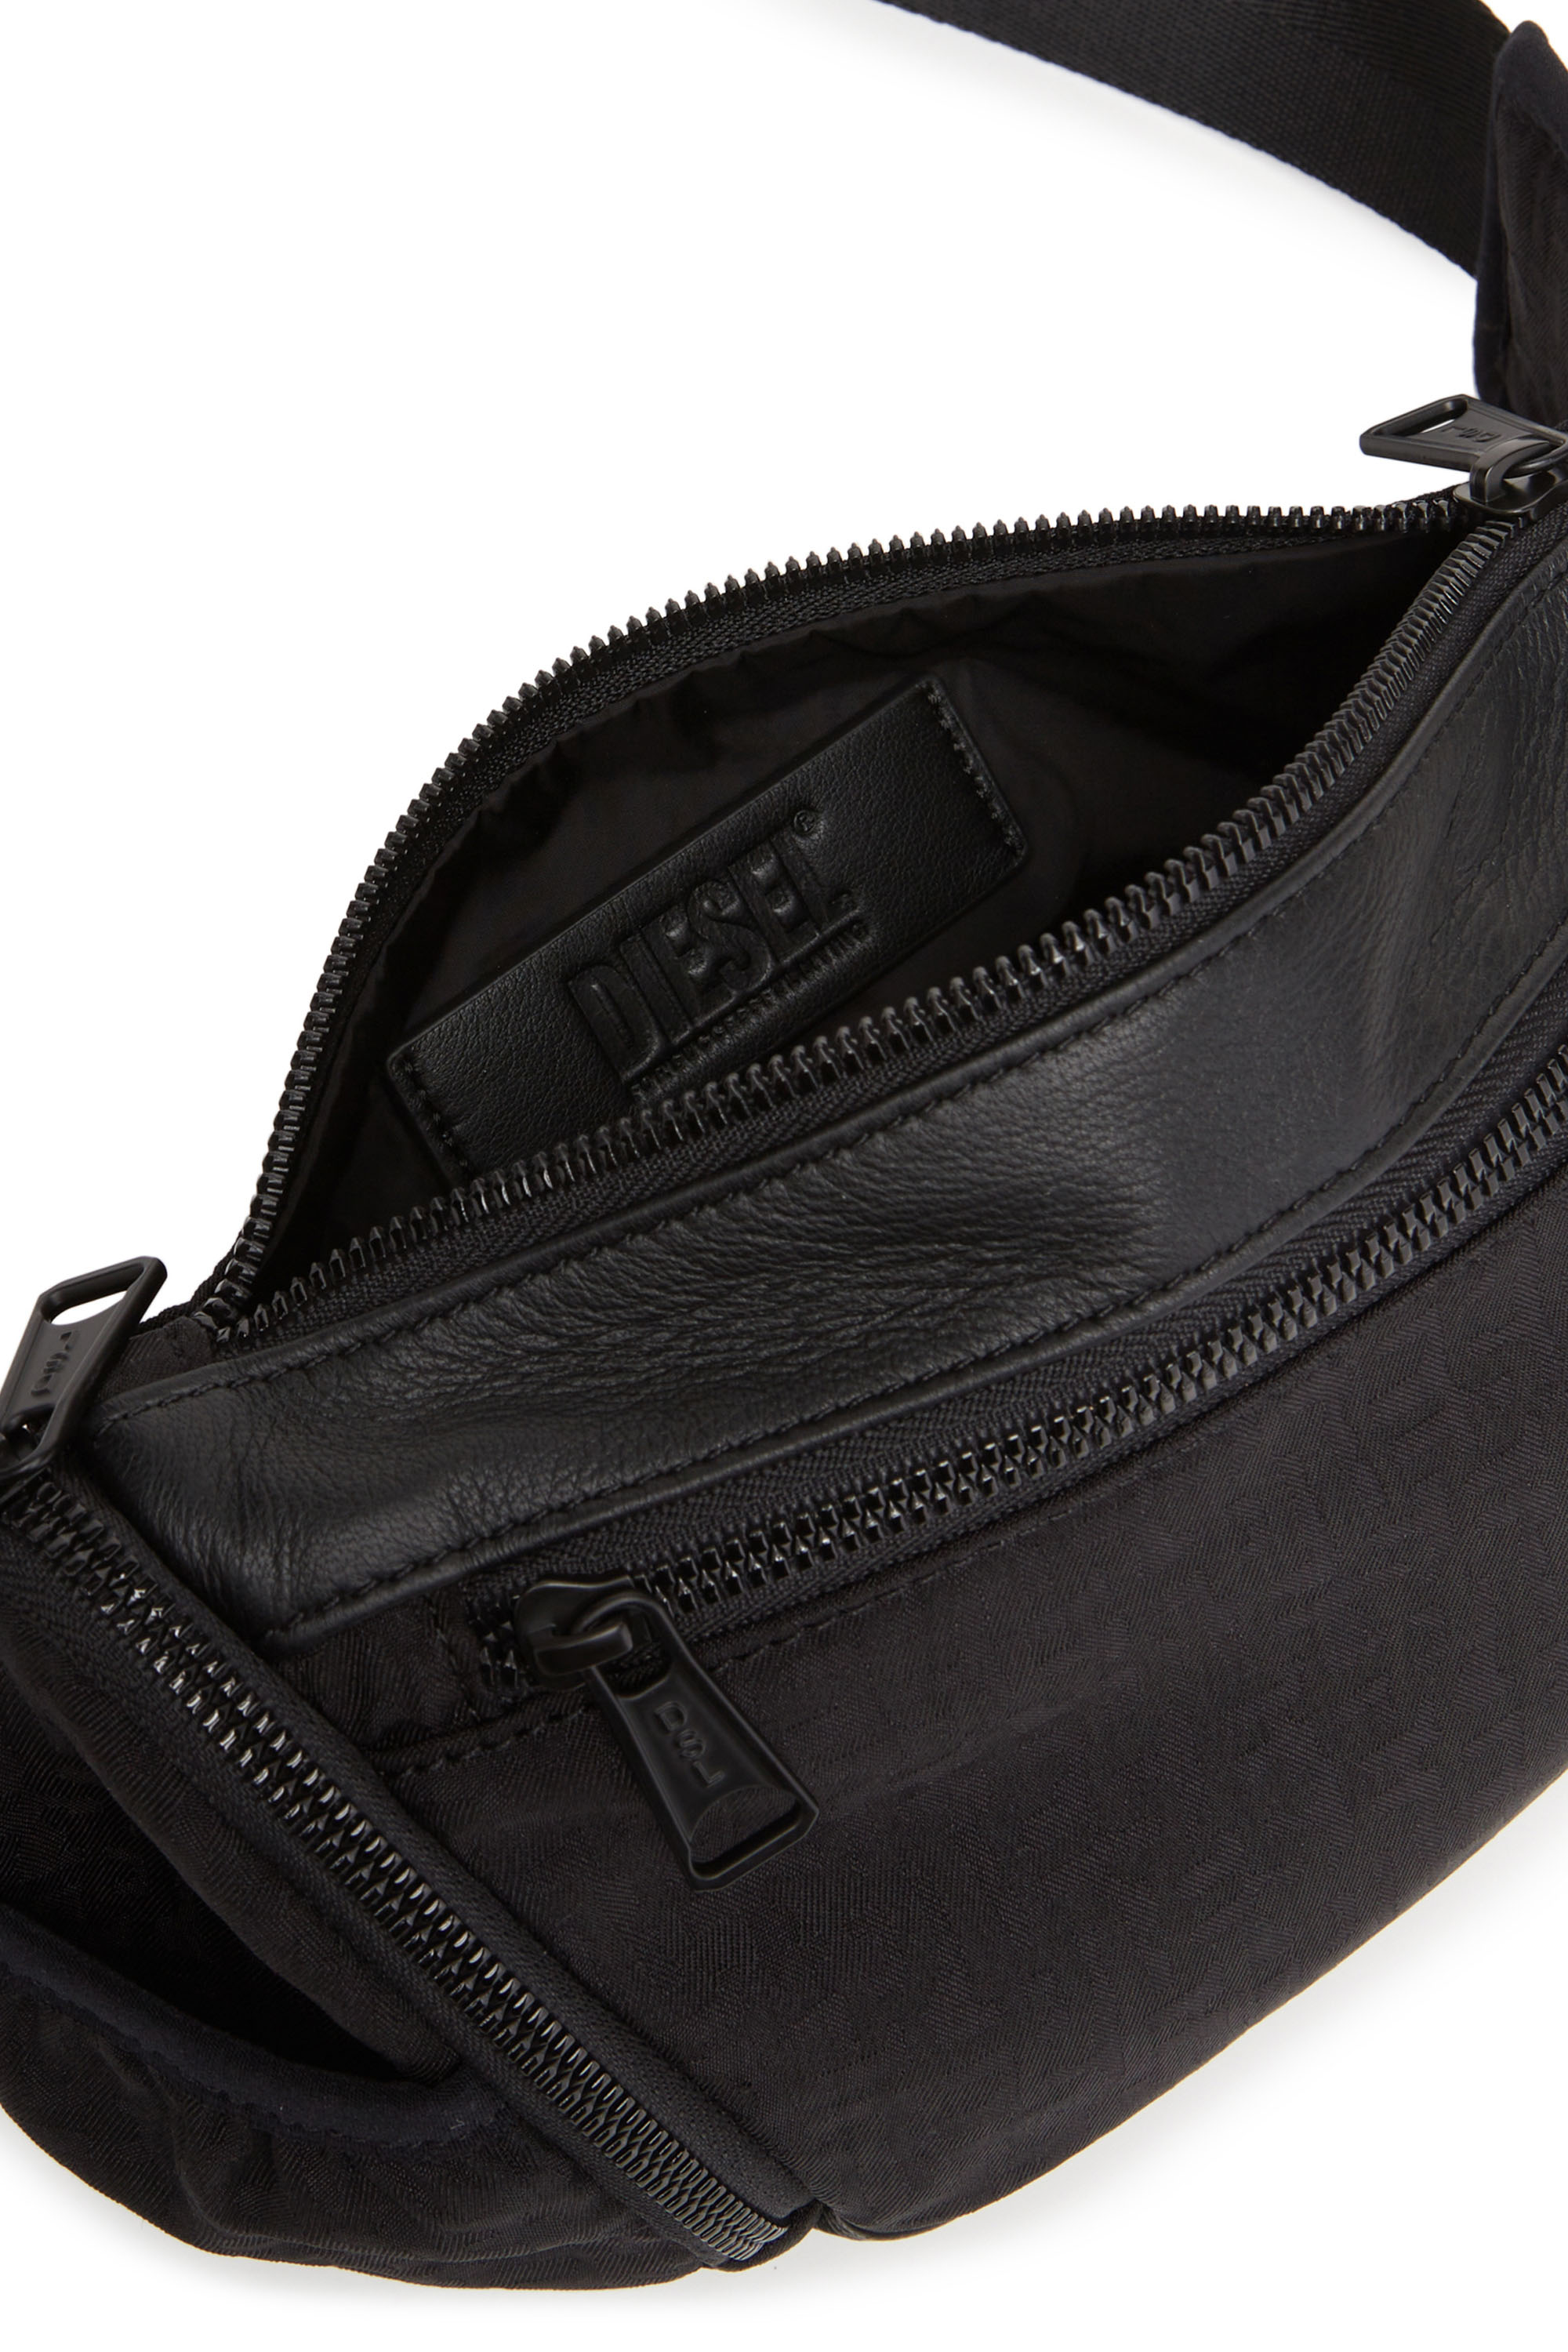 RAVE BELTBAG Rave Beltbag Belt Bag - Leather belt bag with metal D 